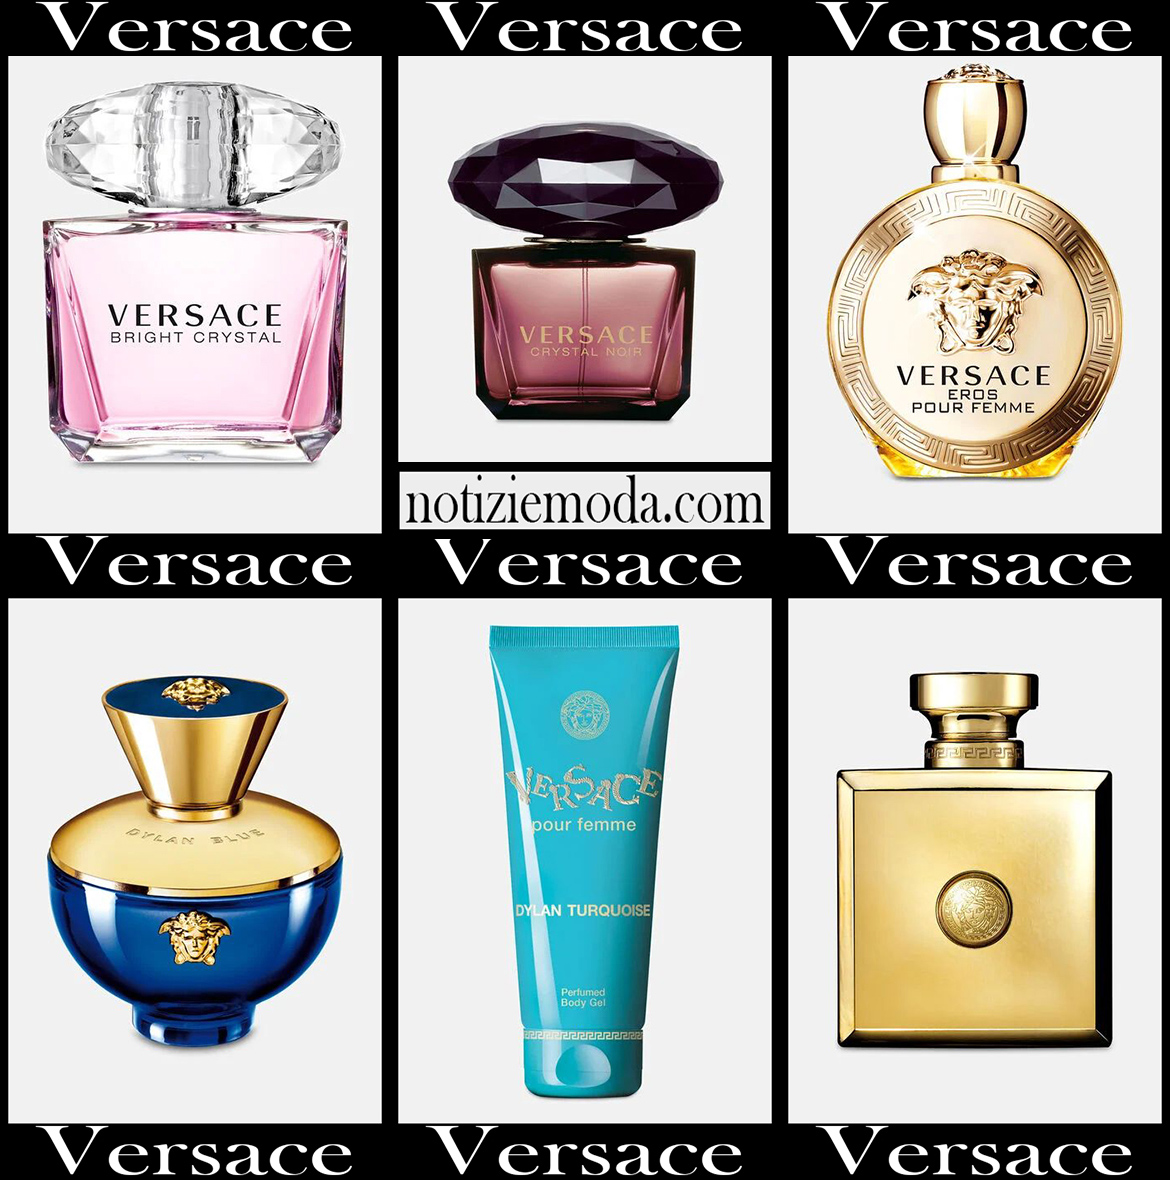 Nuovi arrivi profumi Versace 2021 idee regalo donna